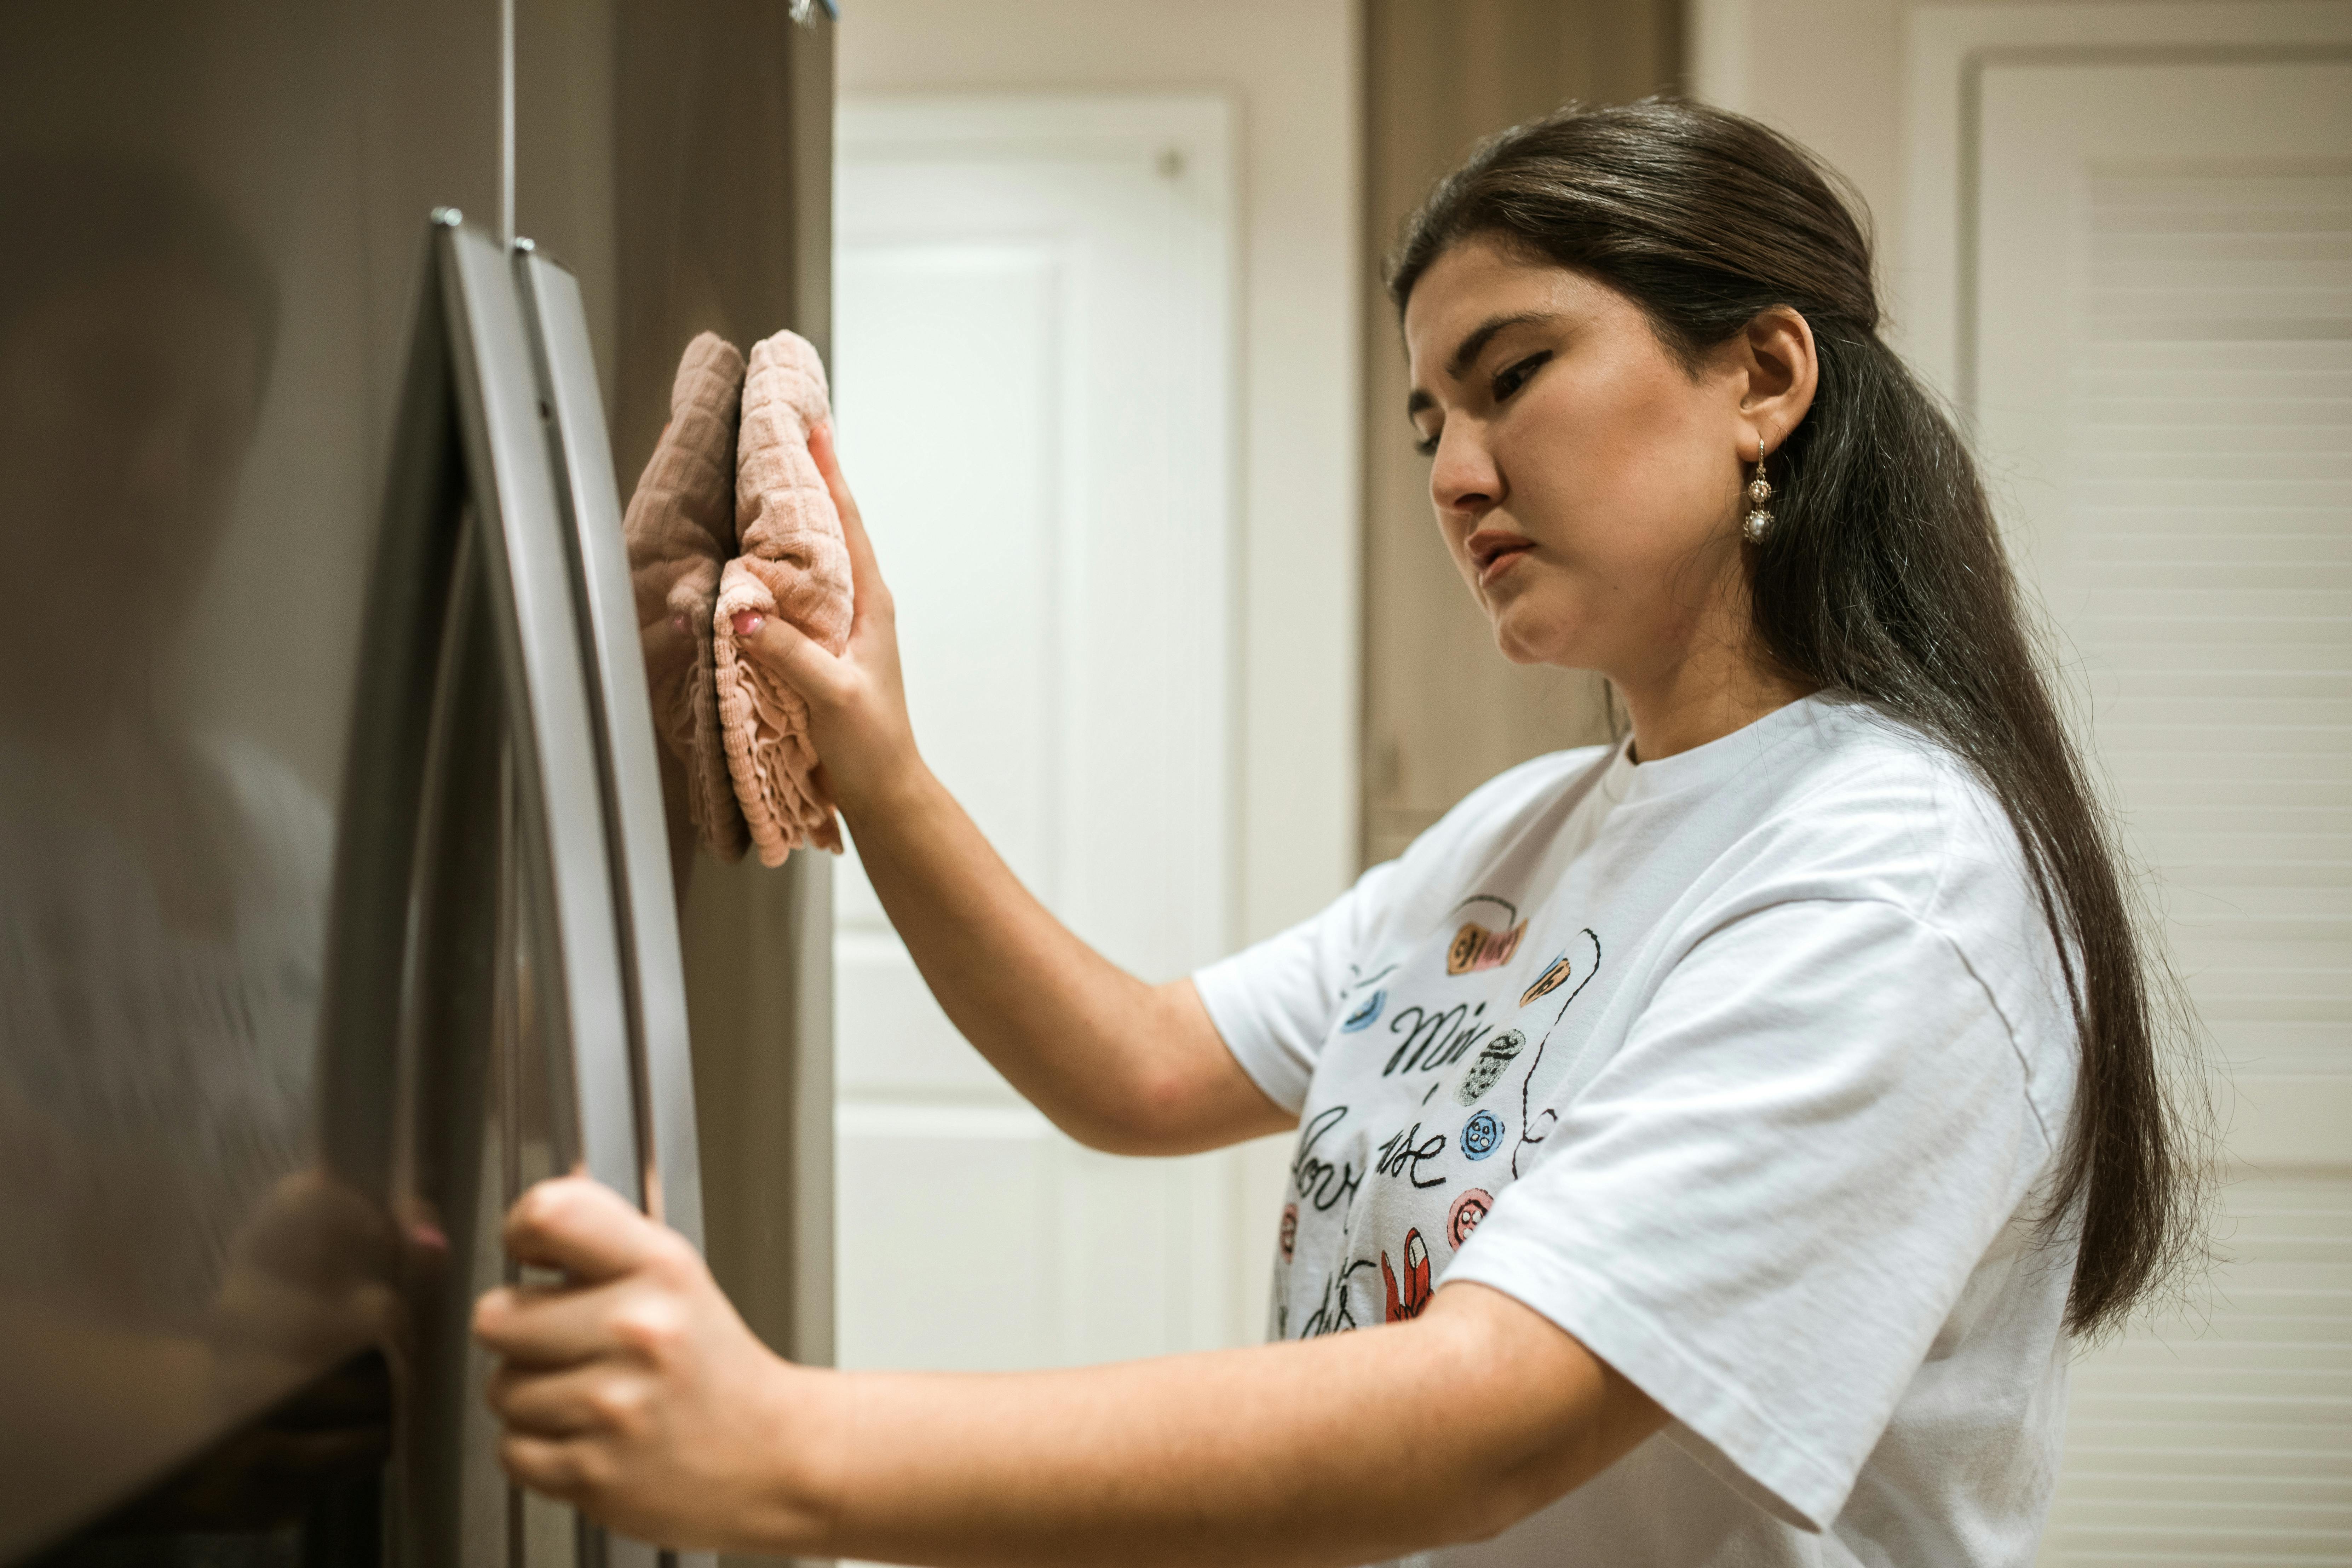 Une femme nettoie un réfrigérateur. | Source : Pexels